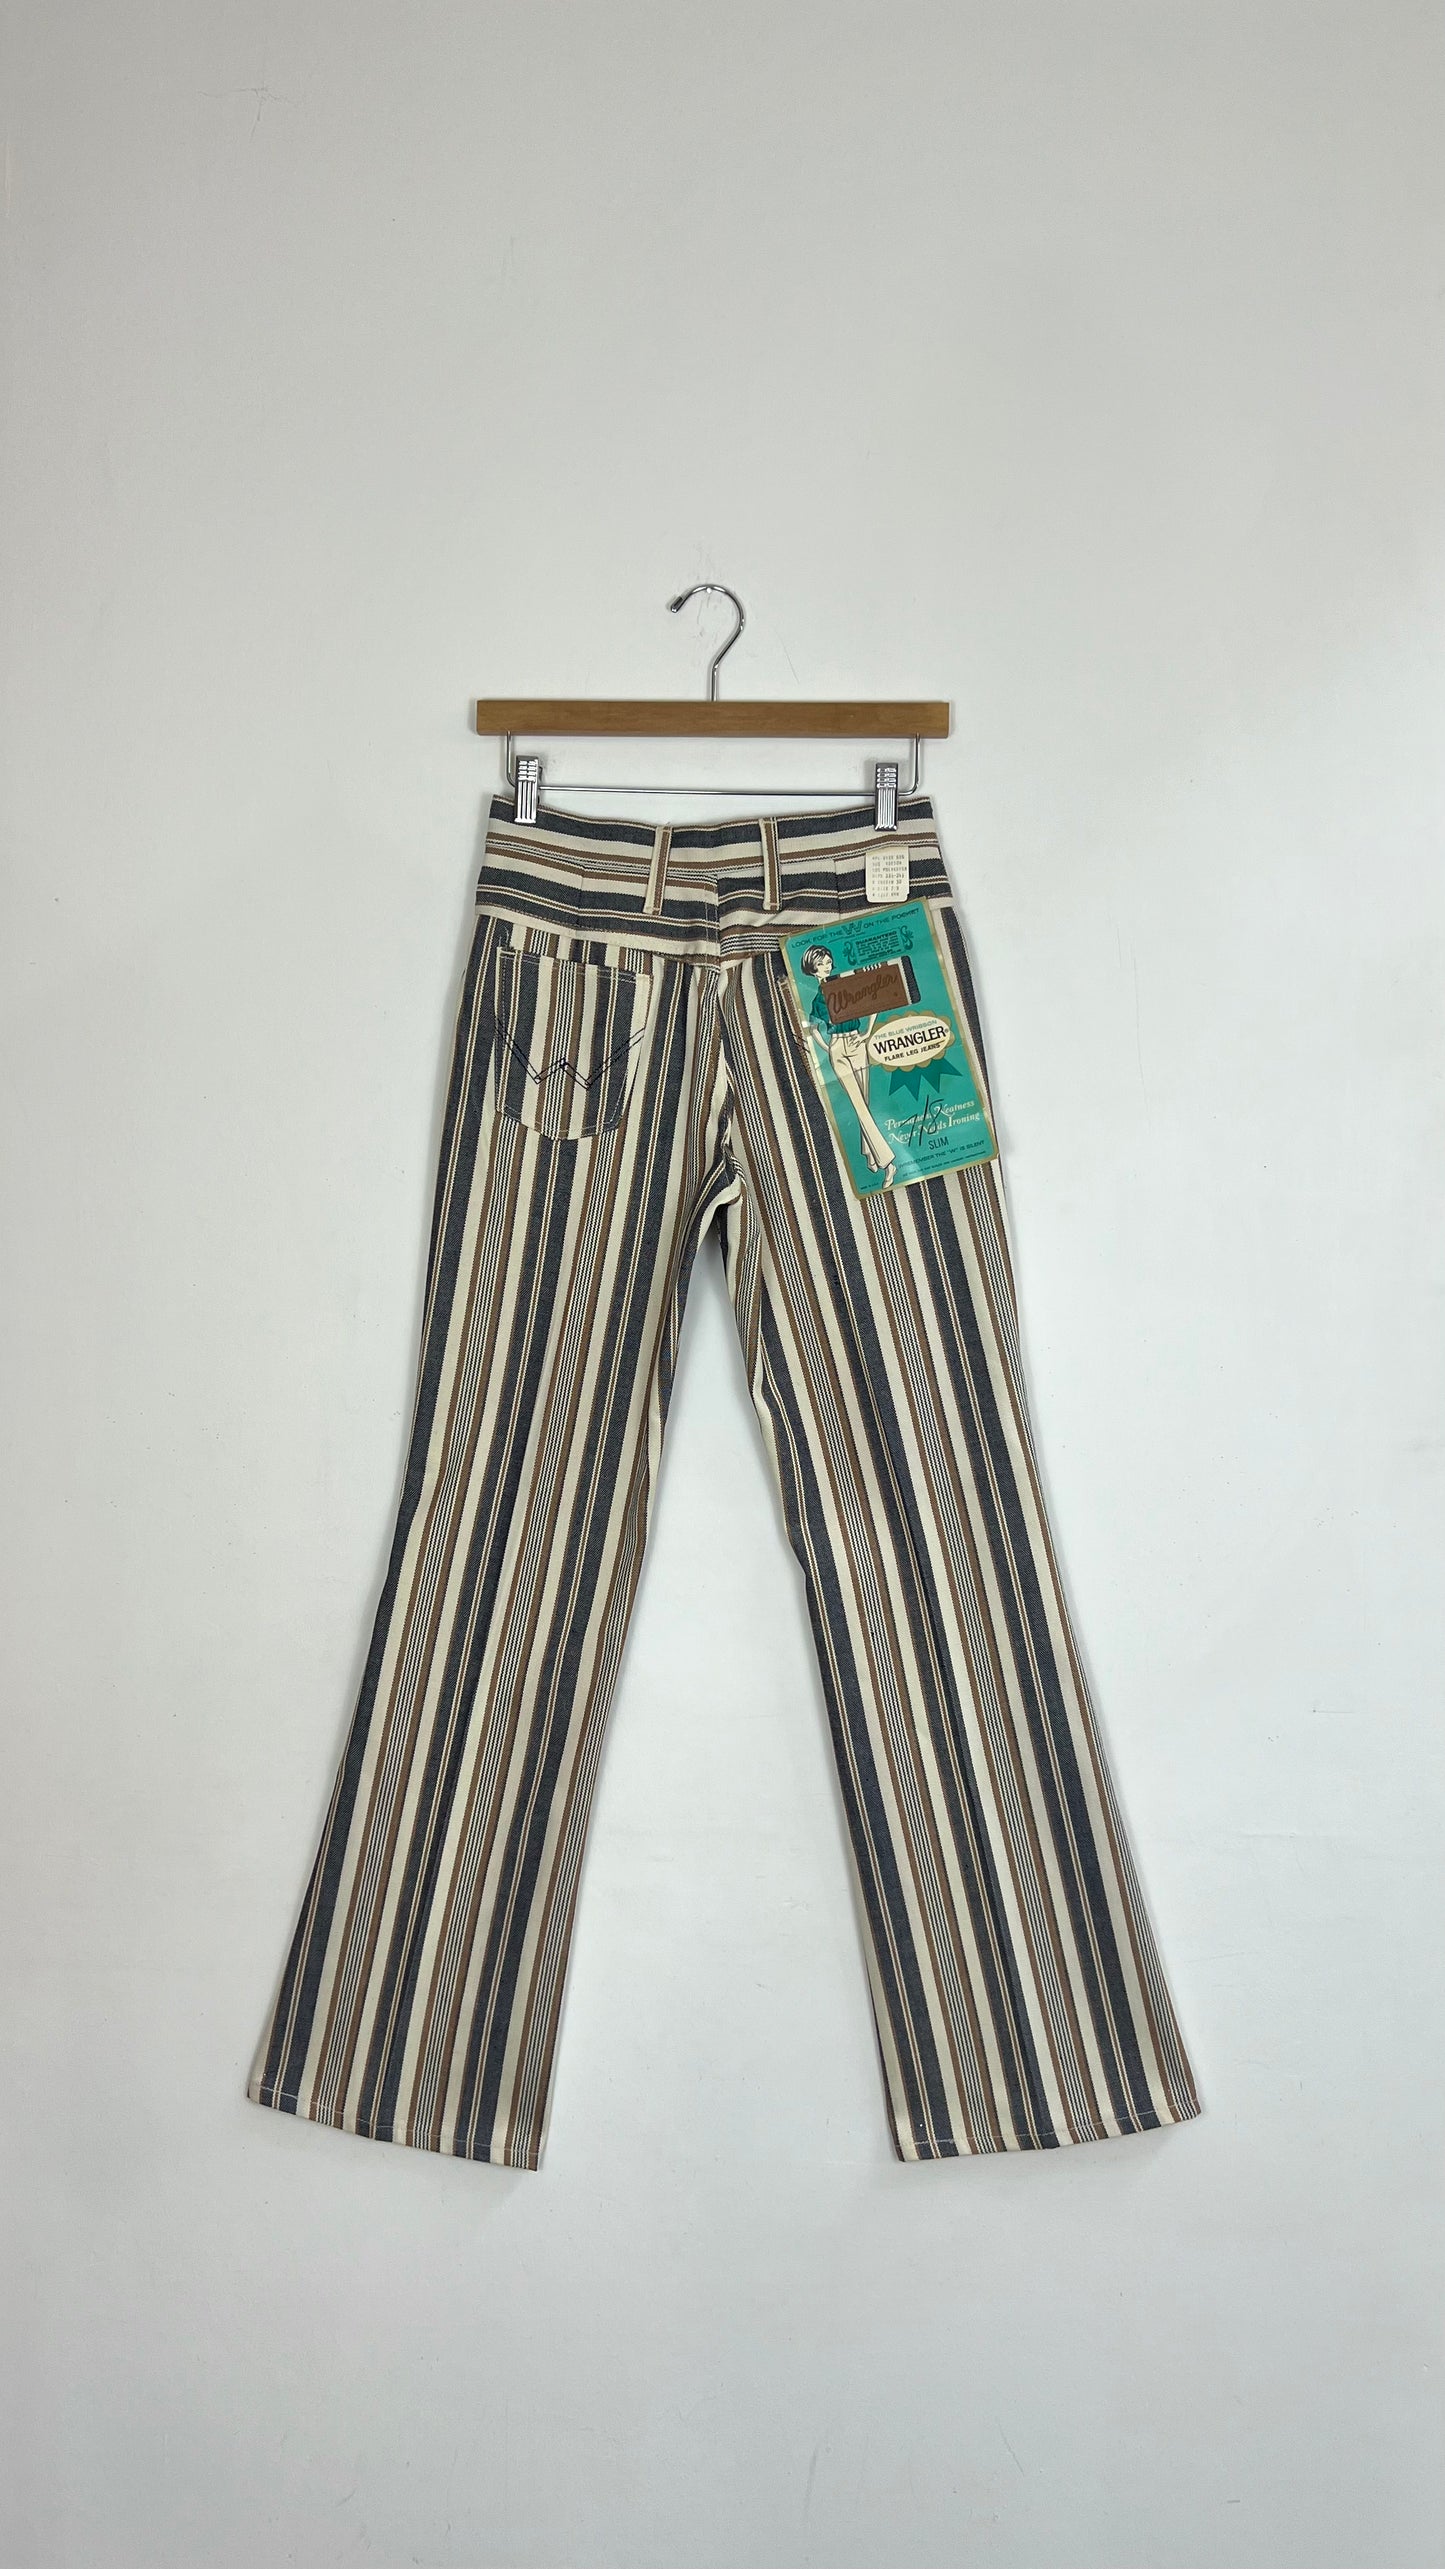 1970's Deadstock Striped Wrangler Jeans